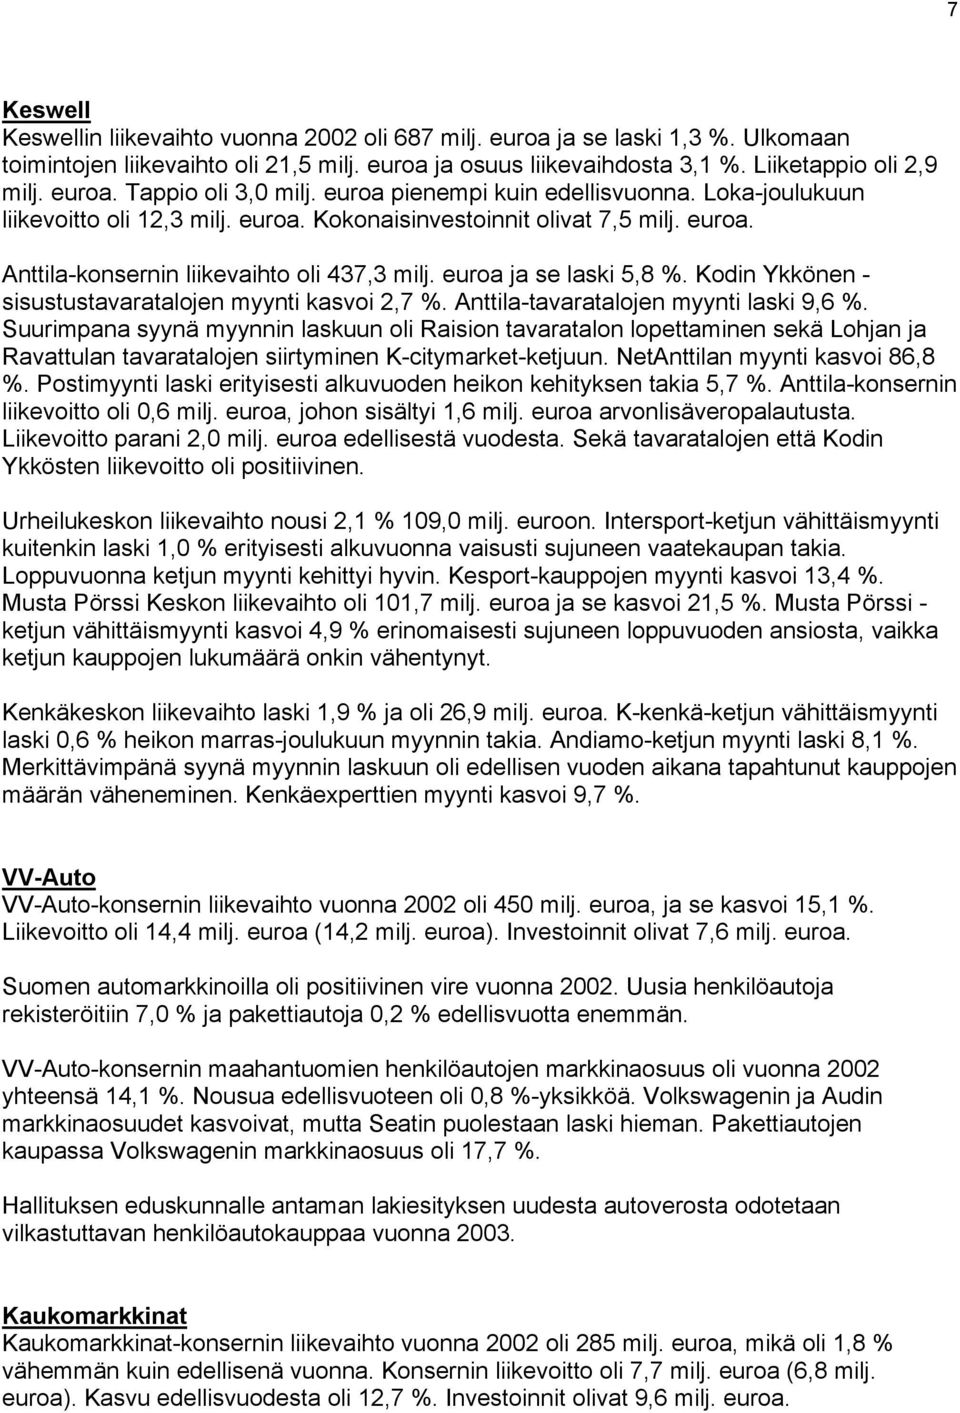 Kodin Ykkönen - sisustustavaratalojen myynti kasvoi 2,7 %. Anttila-tavaratalojen myynti laski 9,6 %.